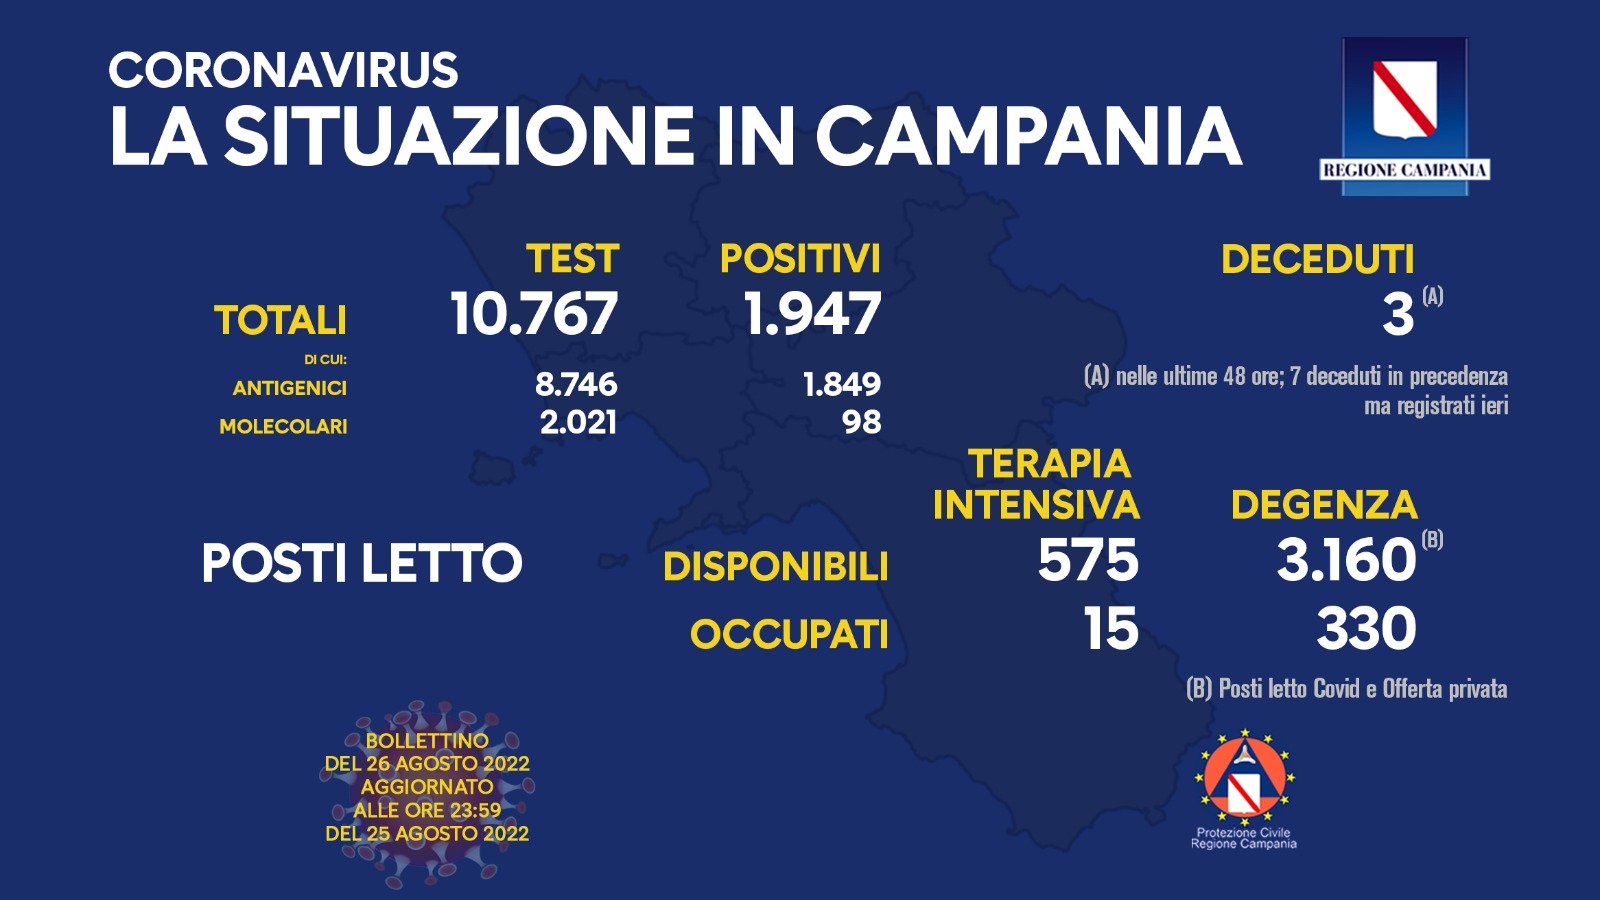 Regione Campania: Coronavirus, Unità di Crisi, Bollettino, 1947 casi positivi, 3 decessi